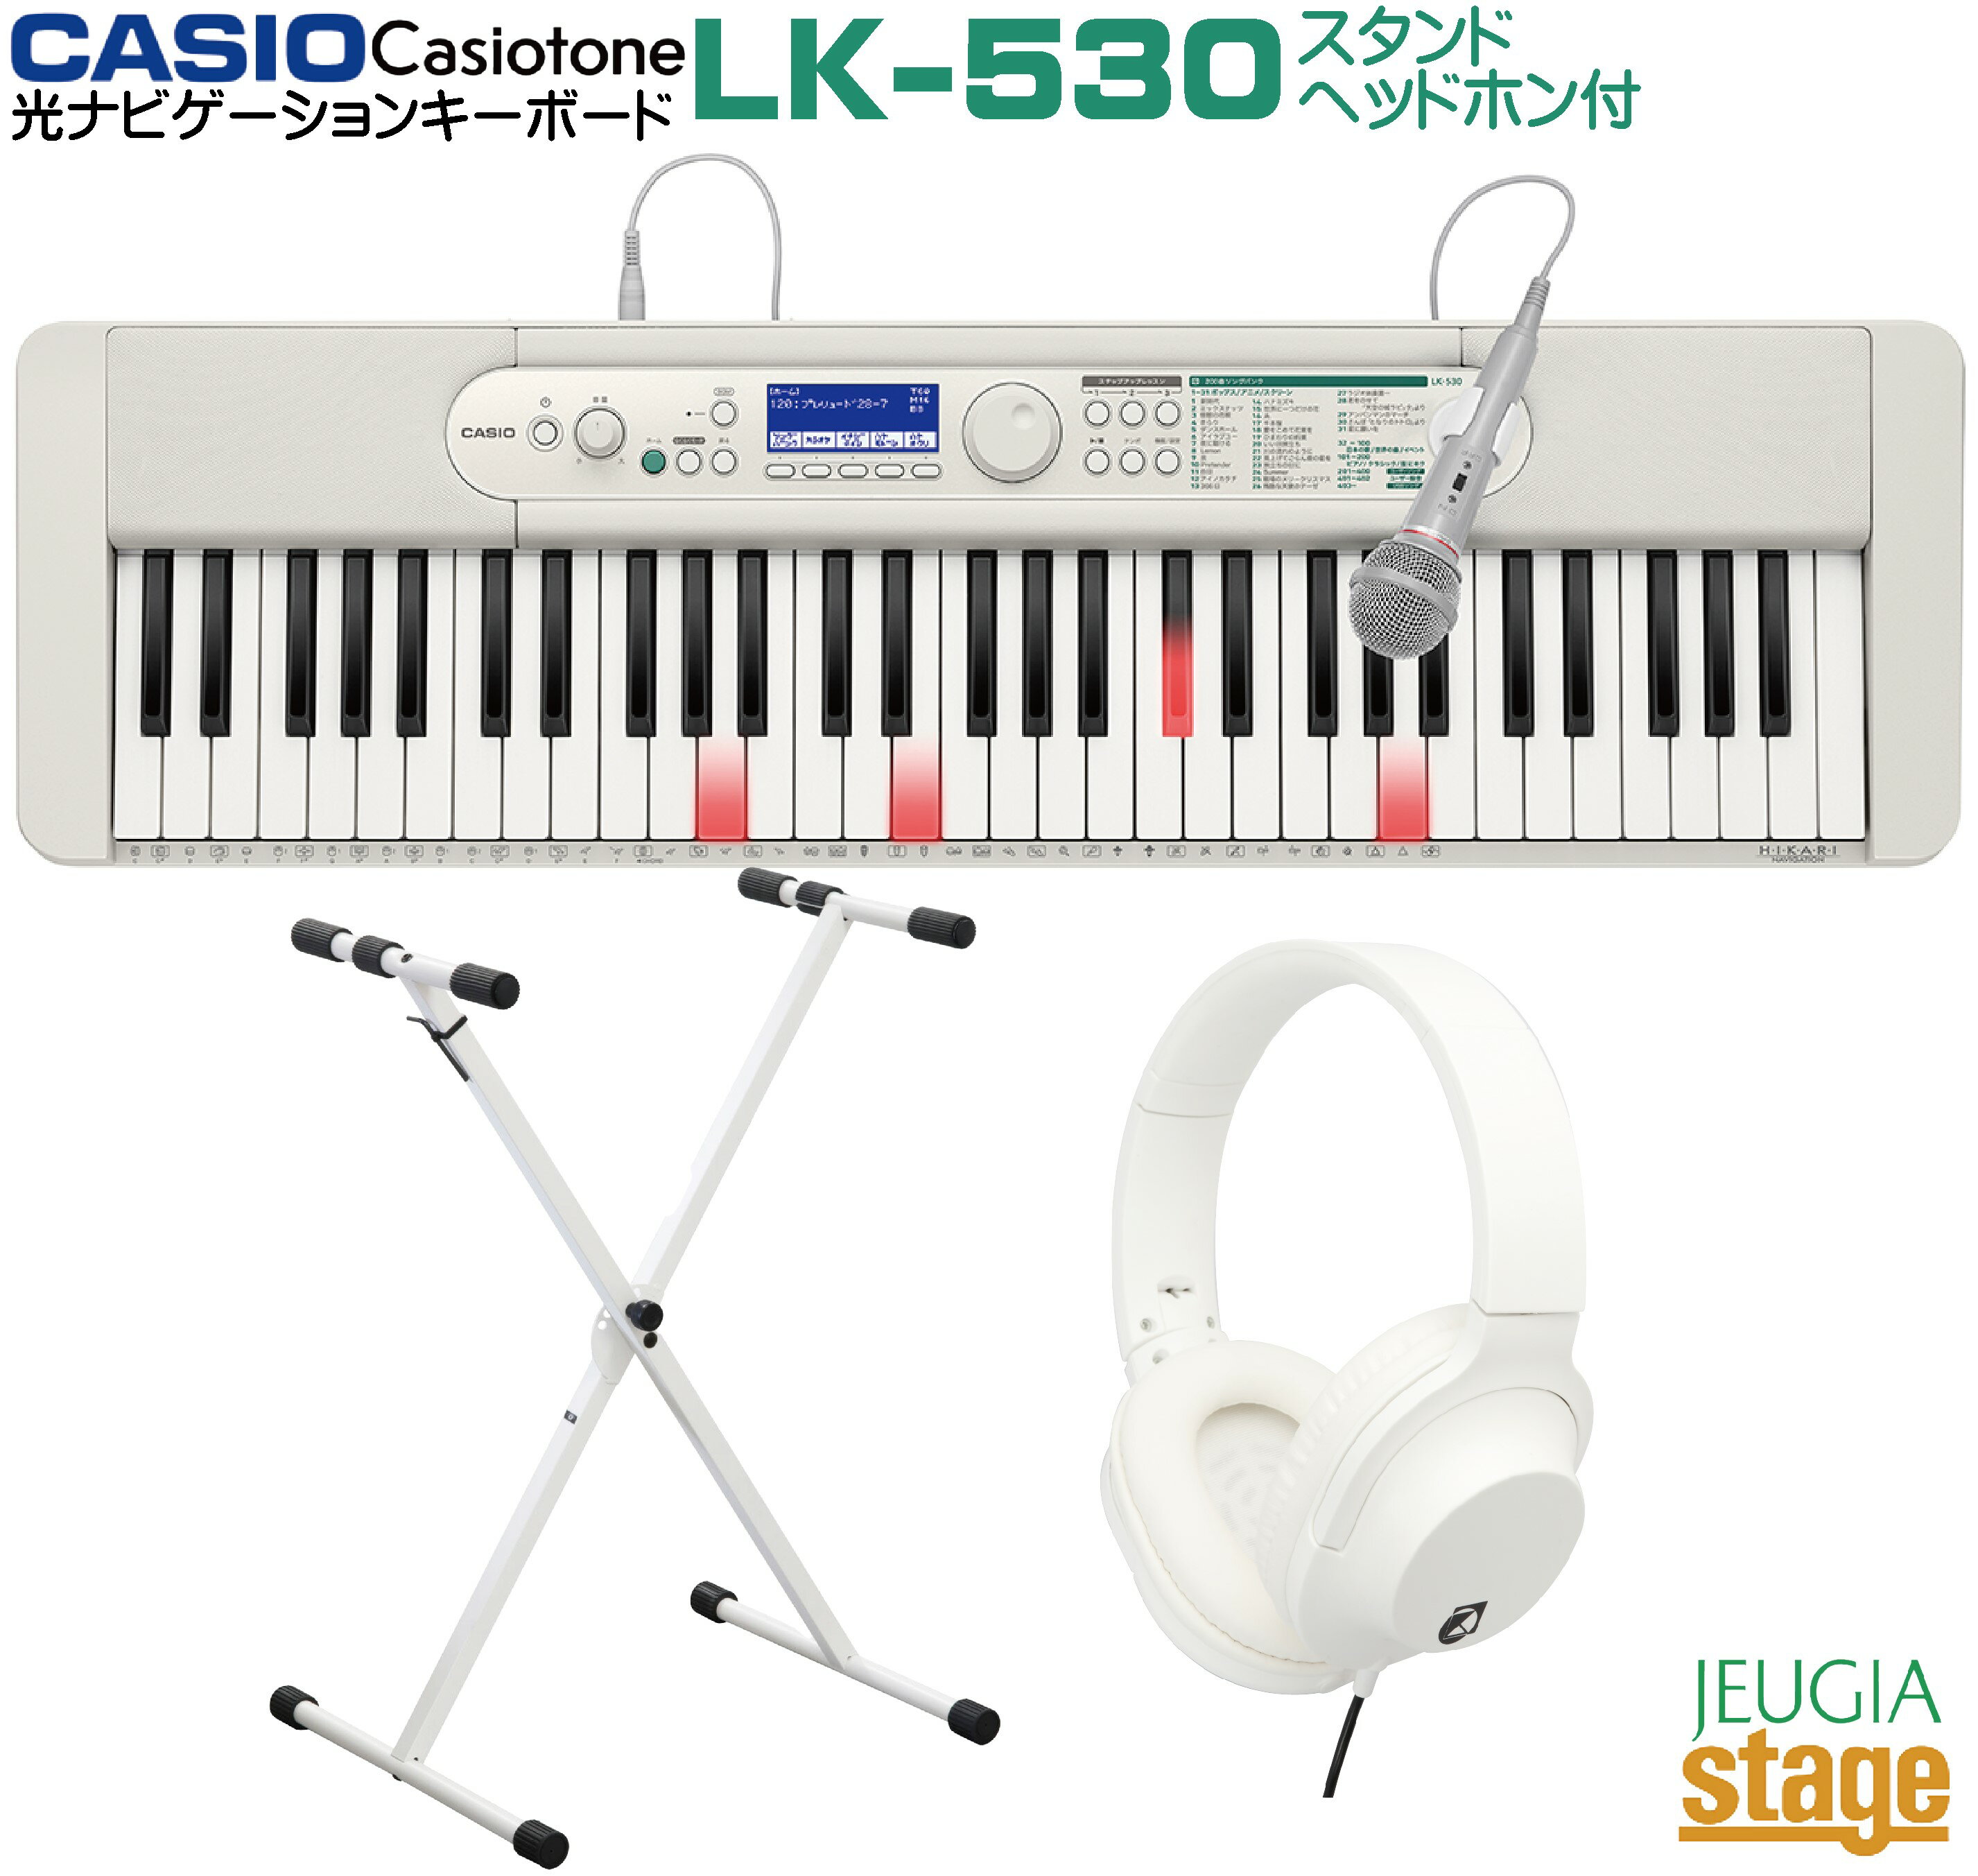 【新製品】CASIO LK-530 Casiotone【スタンド(白)・ヘッドホン(白) 付】カシオ 光ナビゲーション キーボード カシオトーン 61鍵【Stage-Rakuten Keyboard SET】LK-520後継機種